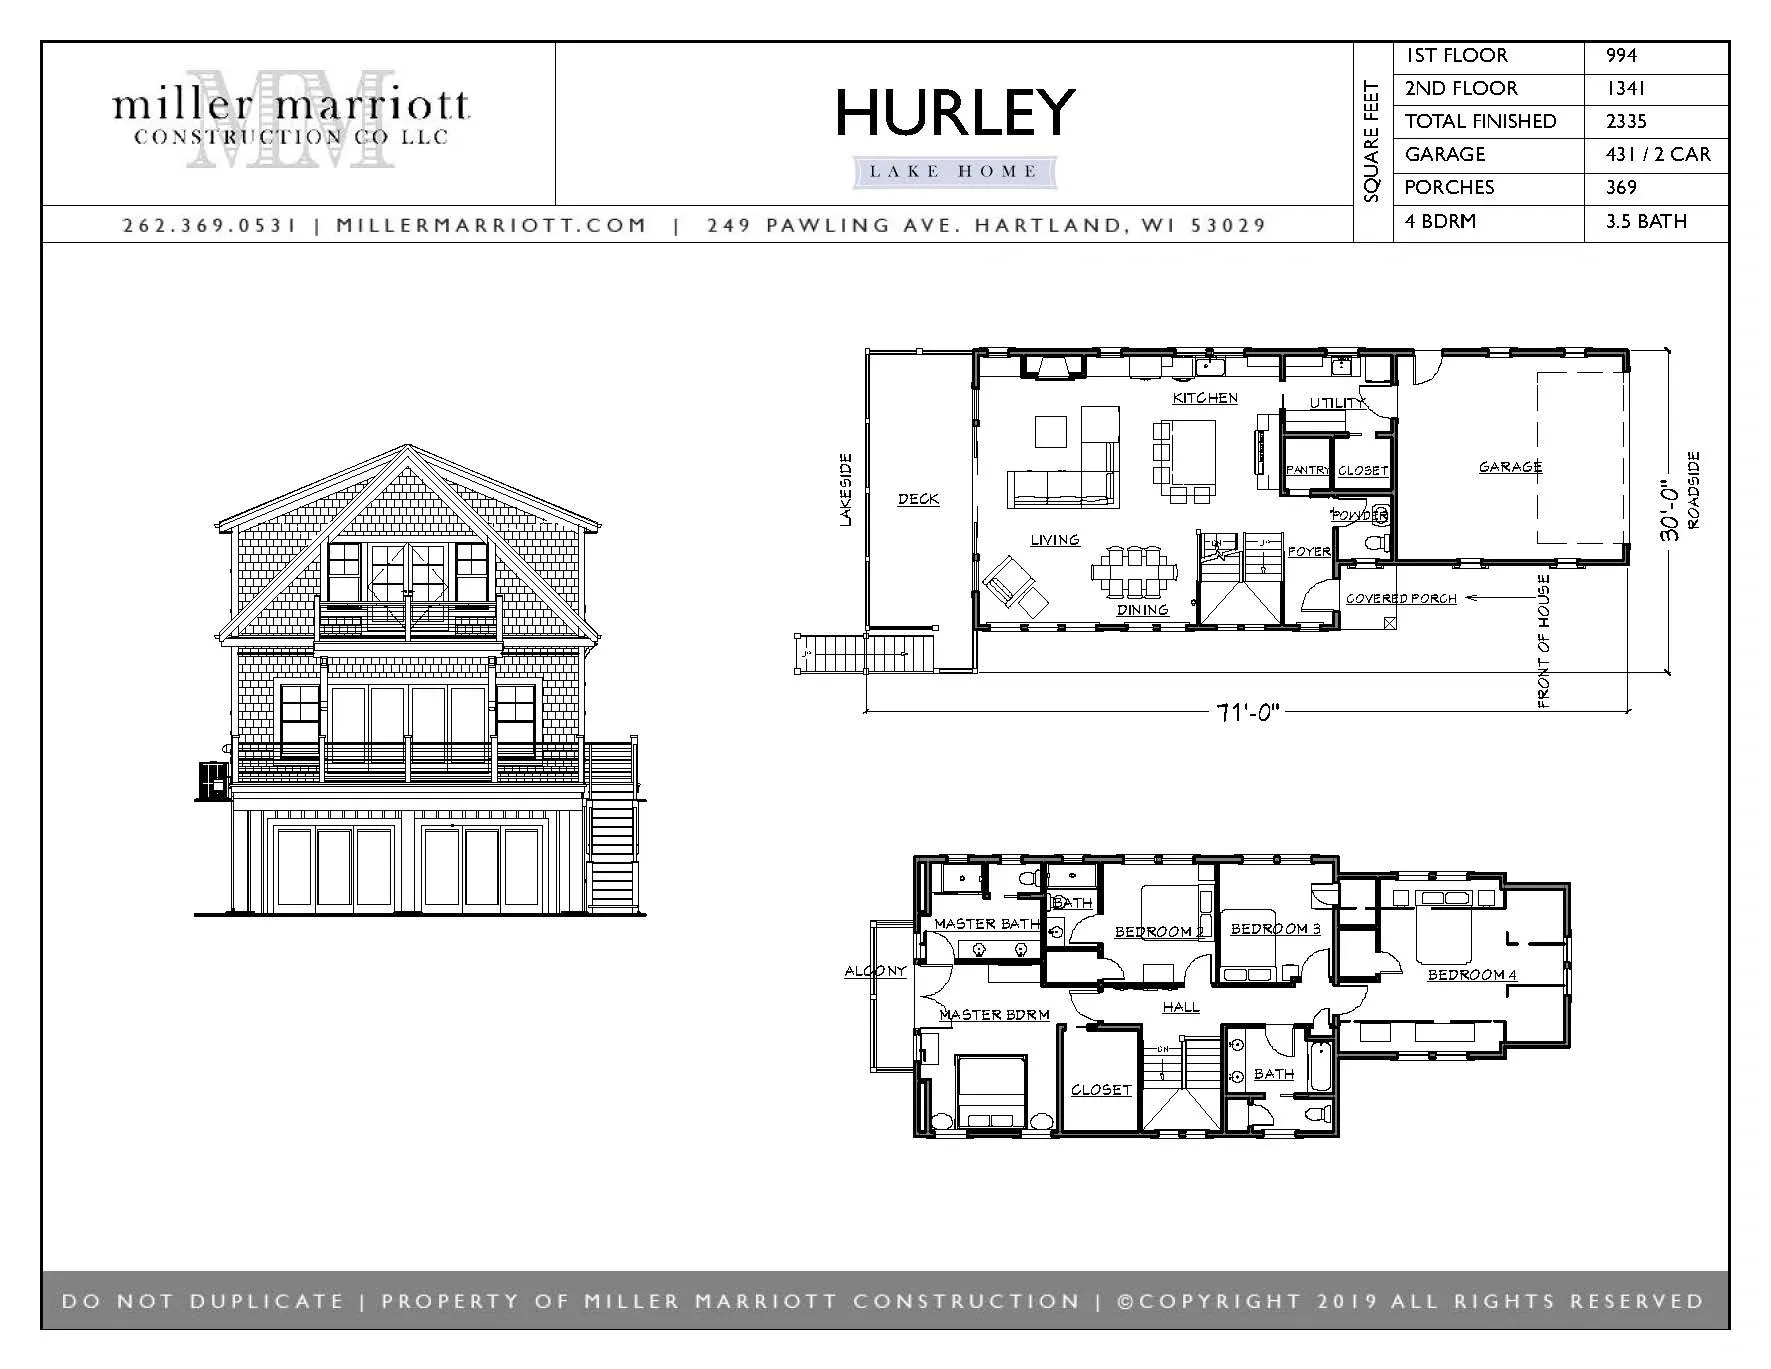 Hurley Lake Home Plan